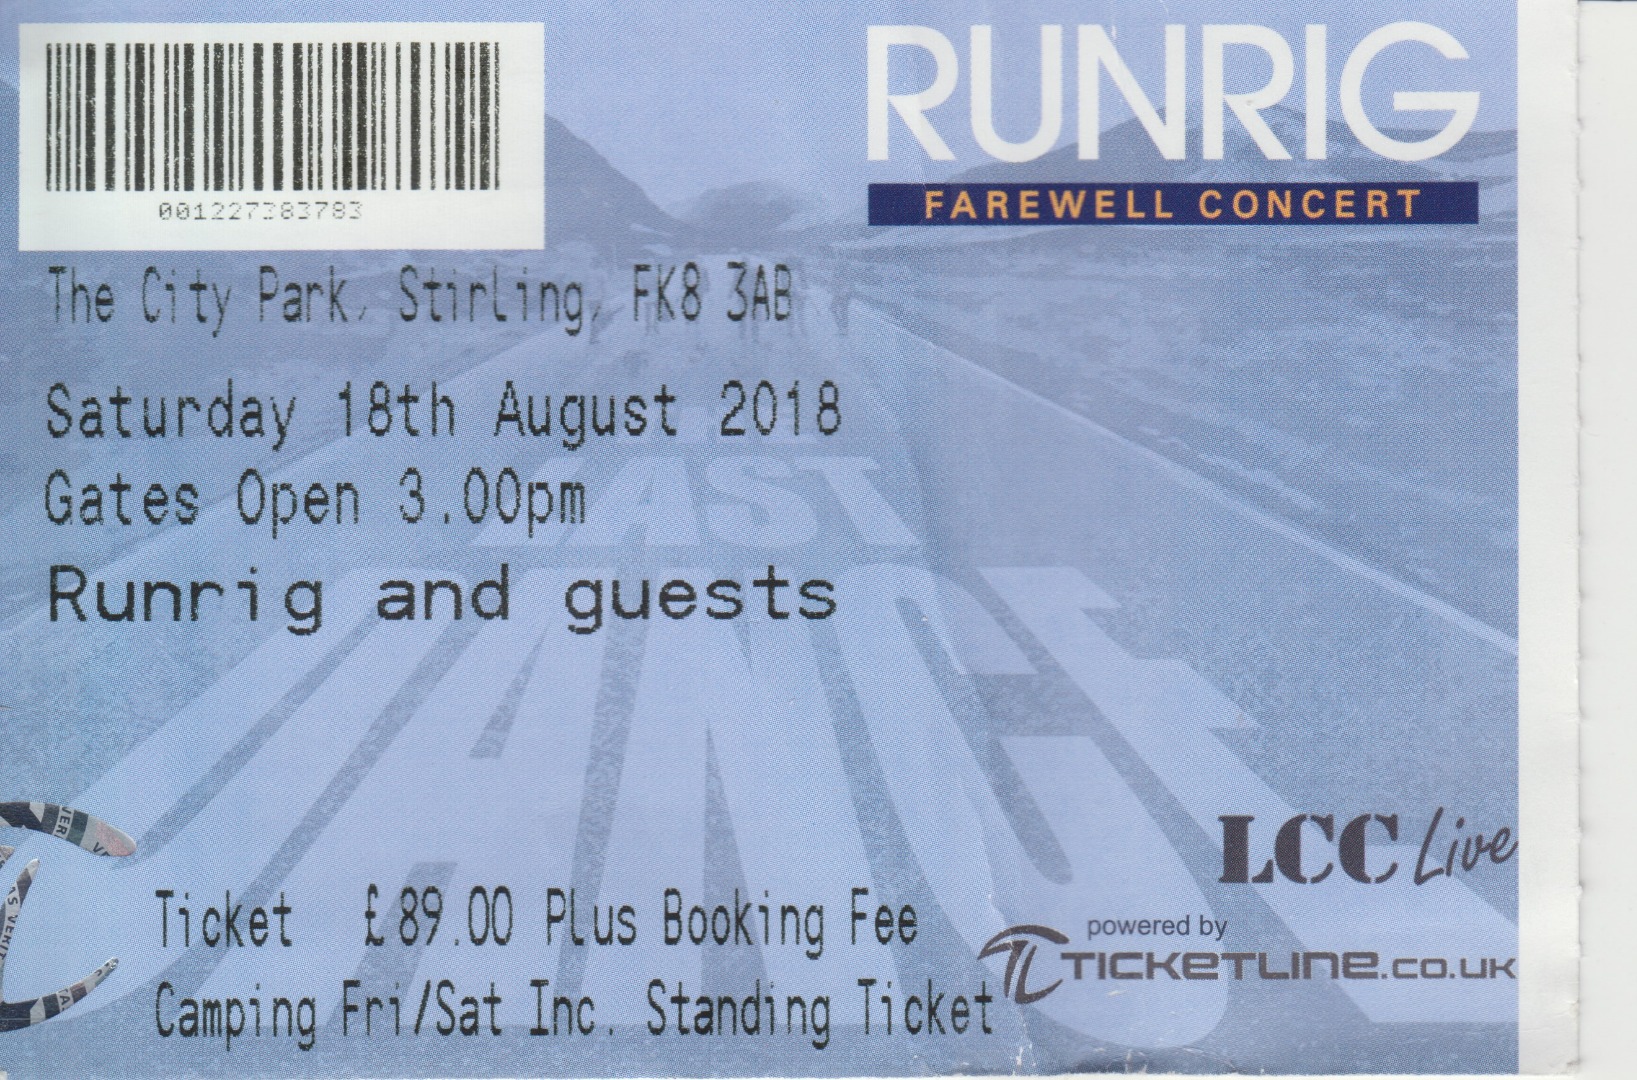 *18. august 2018 - koncert Runrig - City Park i Stirling - The Last Dance